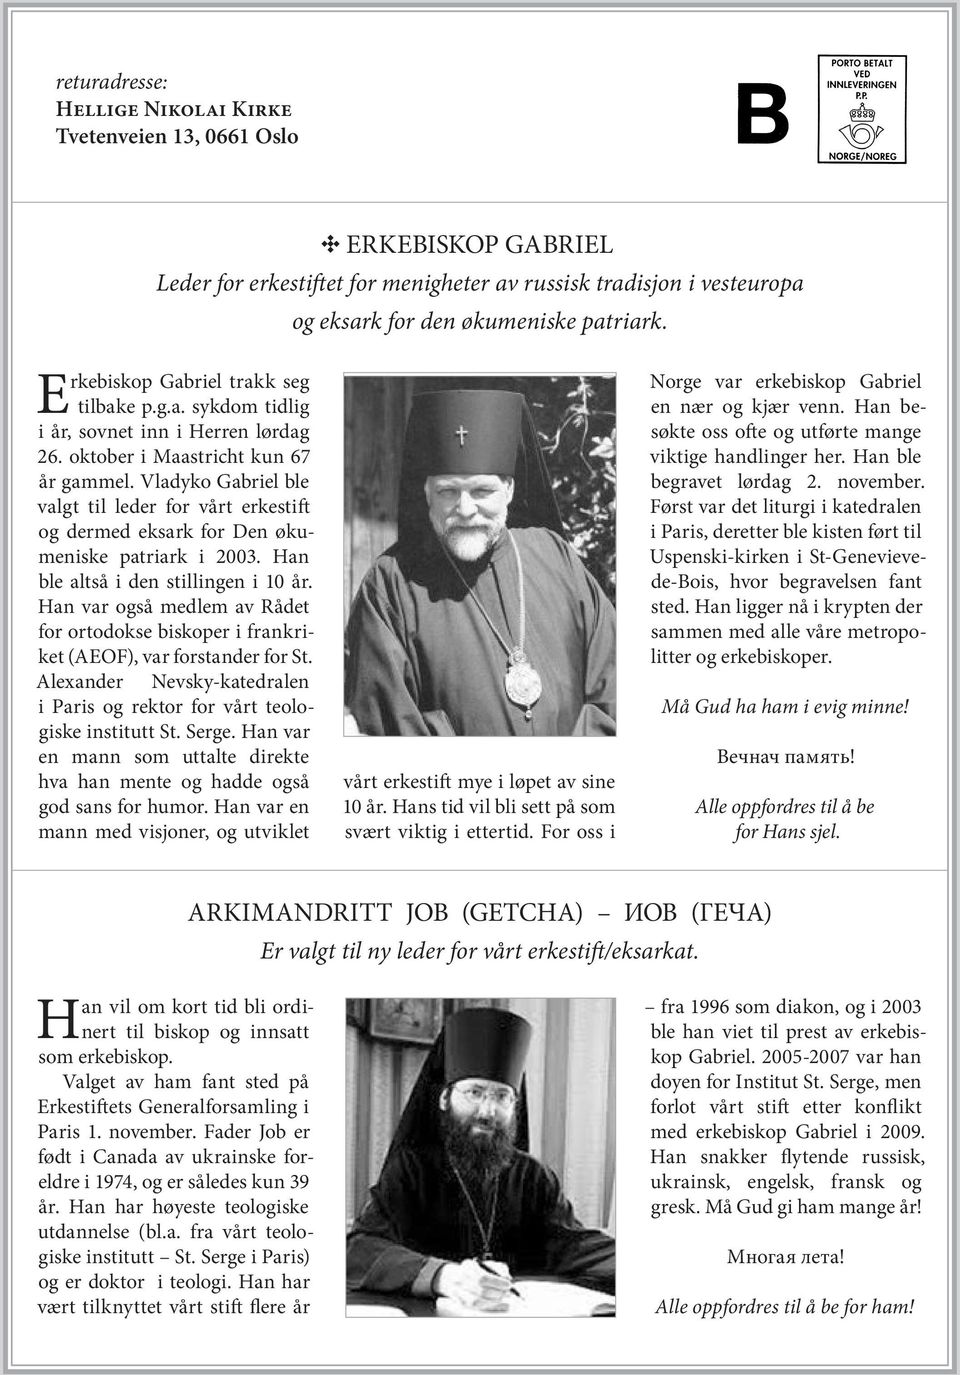 Han var også medlem av Rådet for ortodokse biskoper i frankriket (AEOF), var forstander for St. Alexander Nevsky-katedralen i Paris og rektor for vårt teologiske institutt St. Serge.